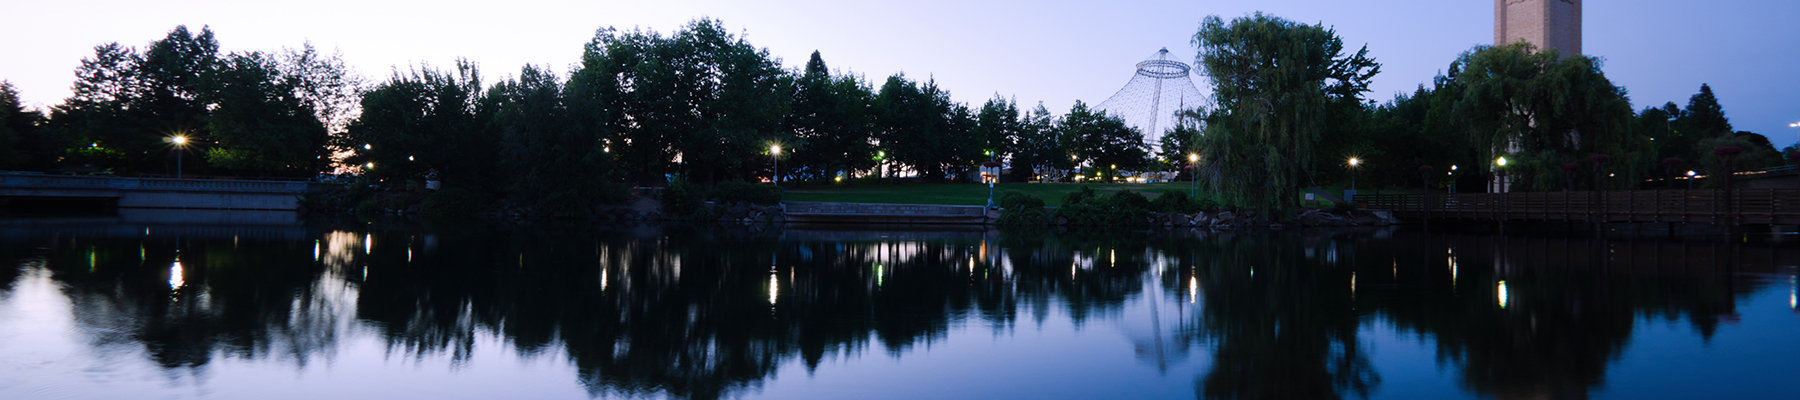 Spokane Riverfront Park at Dawn